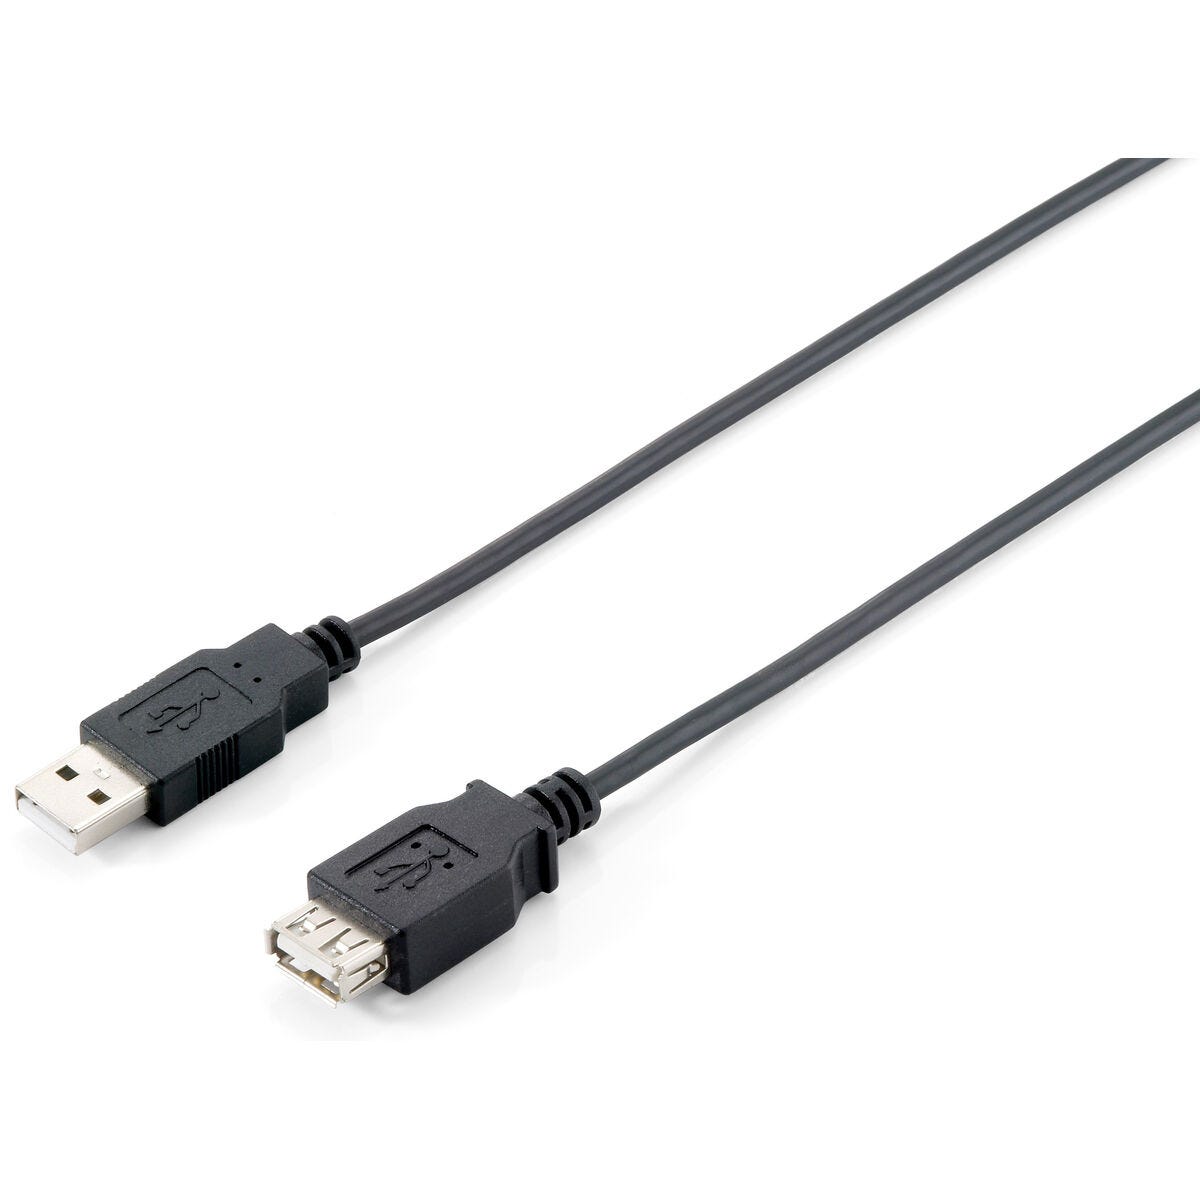 Cable Alargador USB Equip 128851 3 m Negro